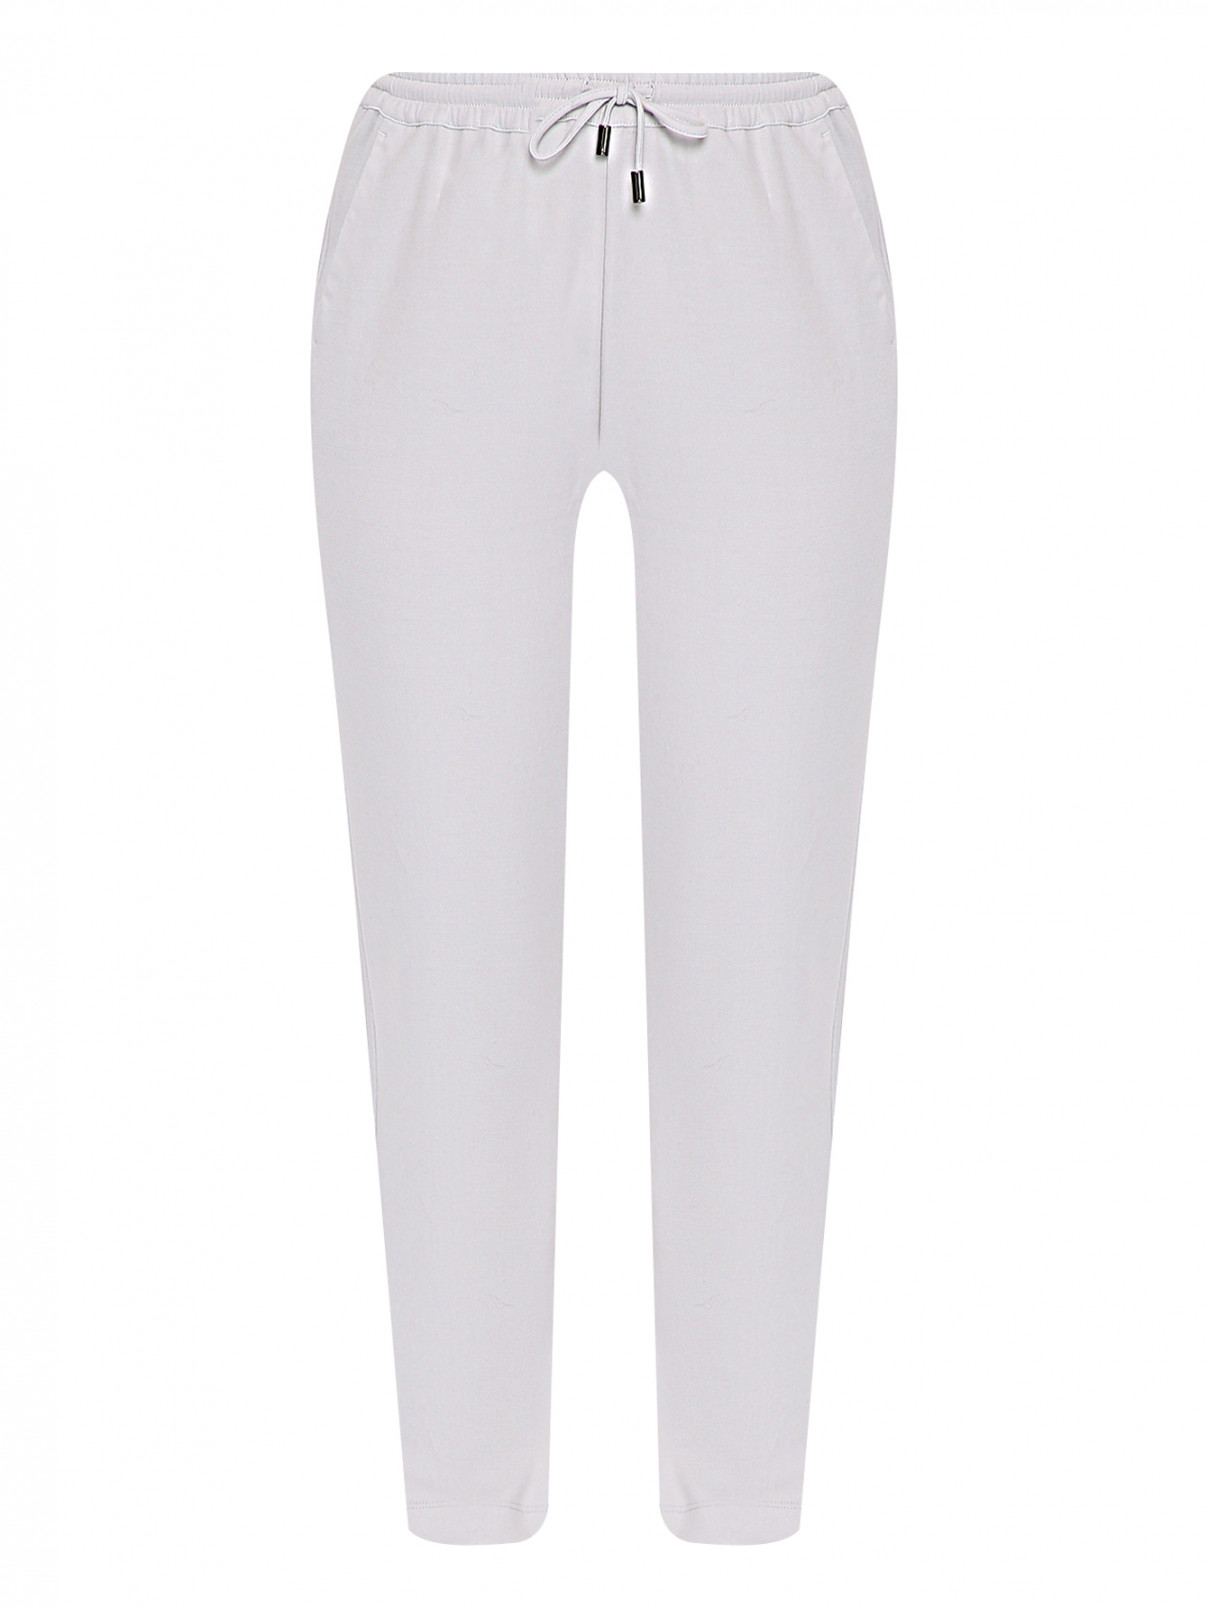 Трикотажные брюки на резинке с карманами Marina Rinaldi  –  Общий вид  – Цвет:  Серый